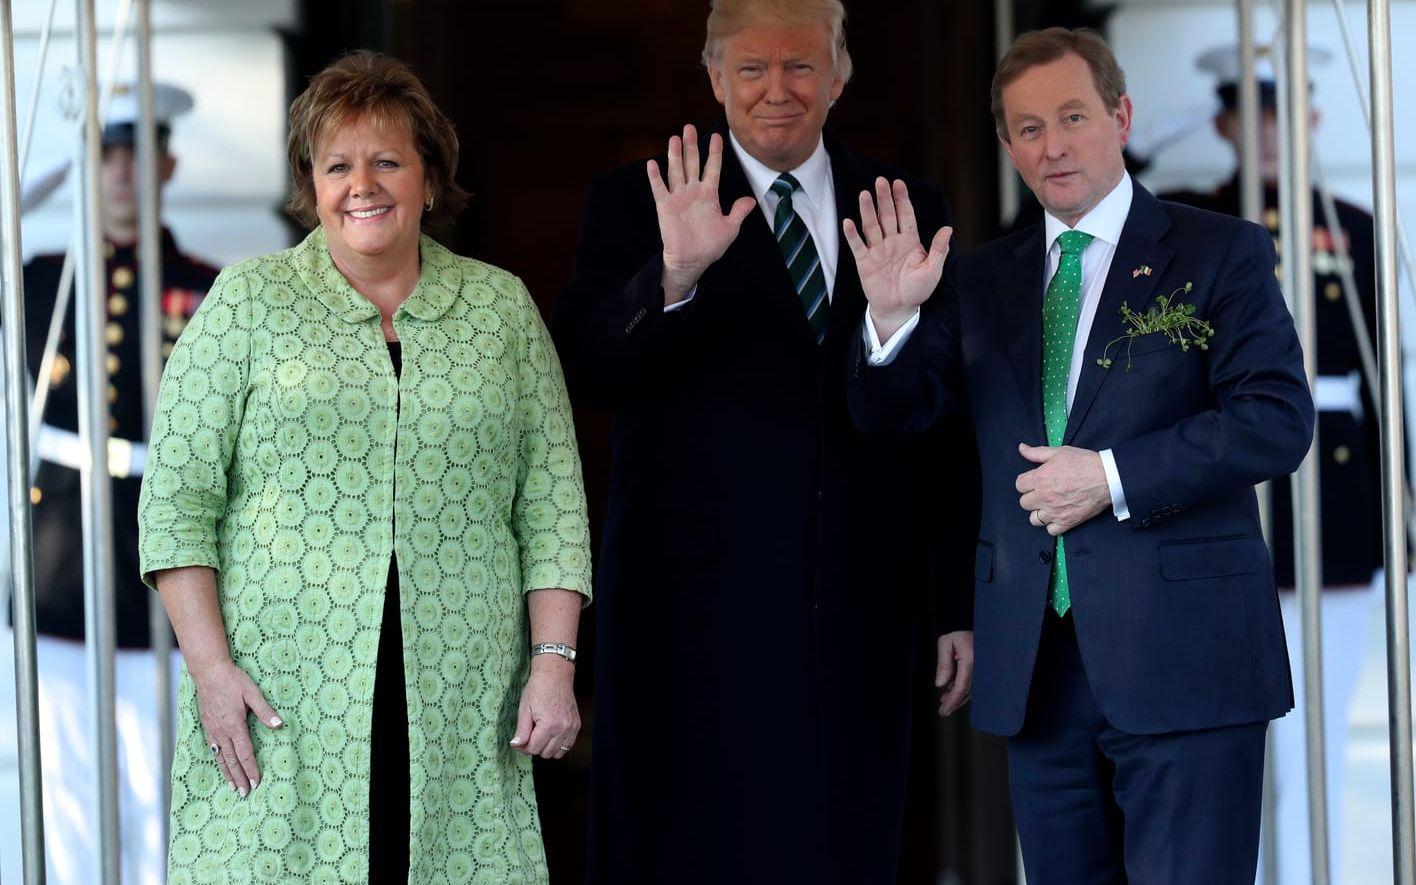 16 MARS: Den irländske premiärministern Enda Kenny med hustrun Fionnuala besöker Vita Huset. Foto: TT